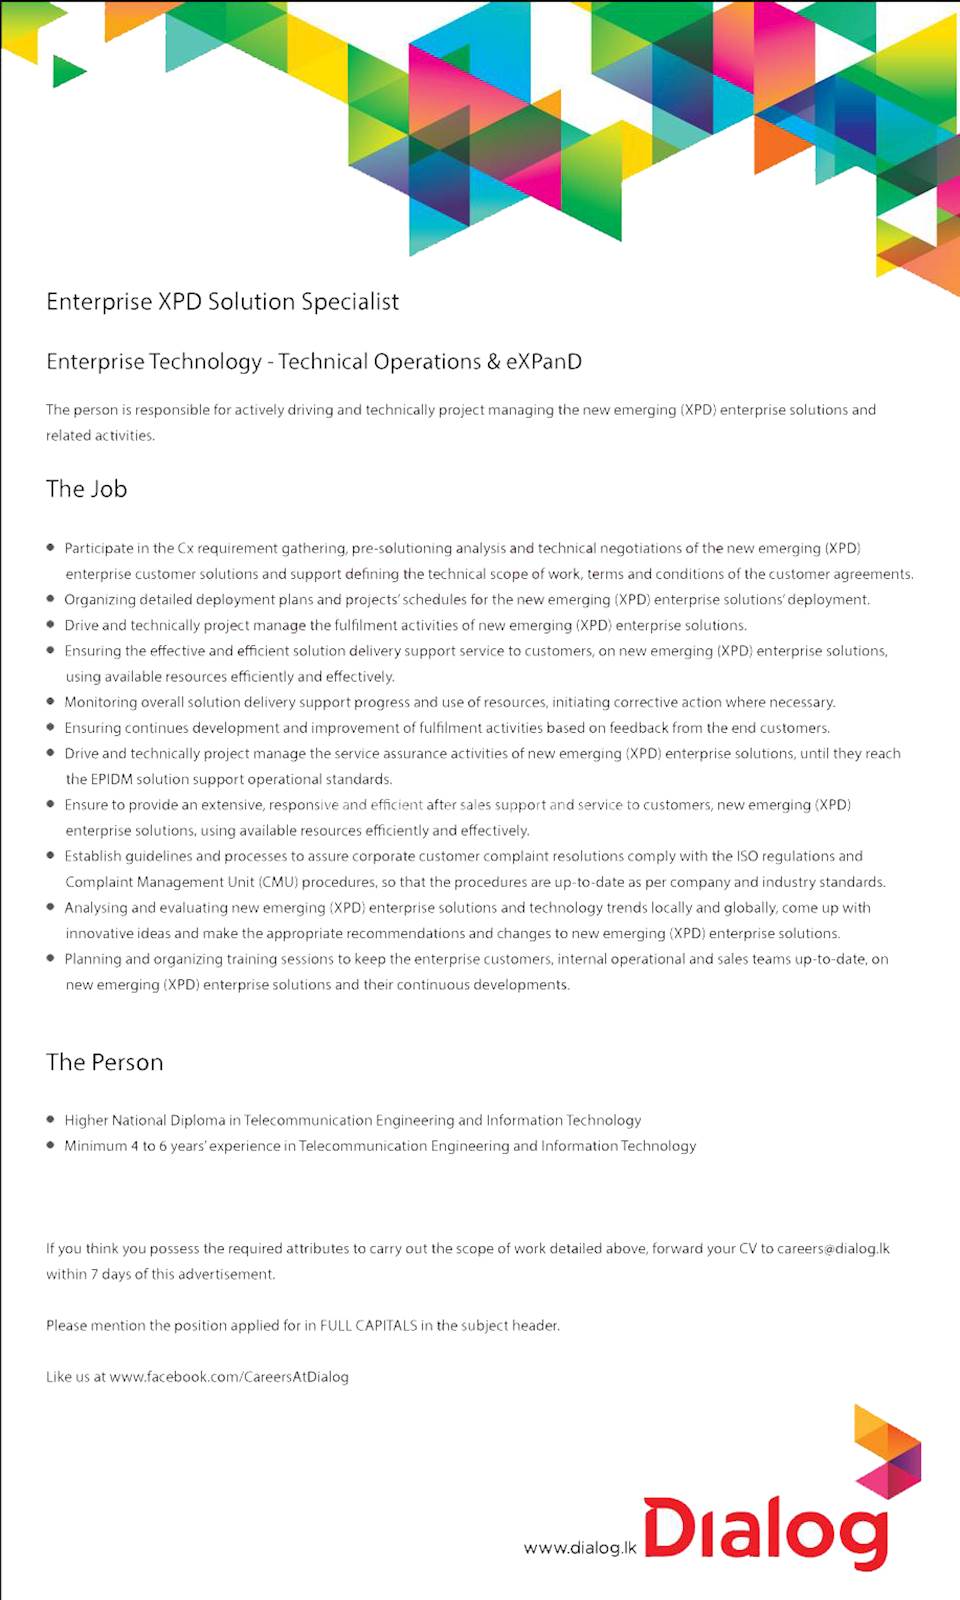 Enterprise XPD Solution Specialist